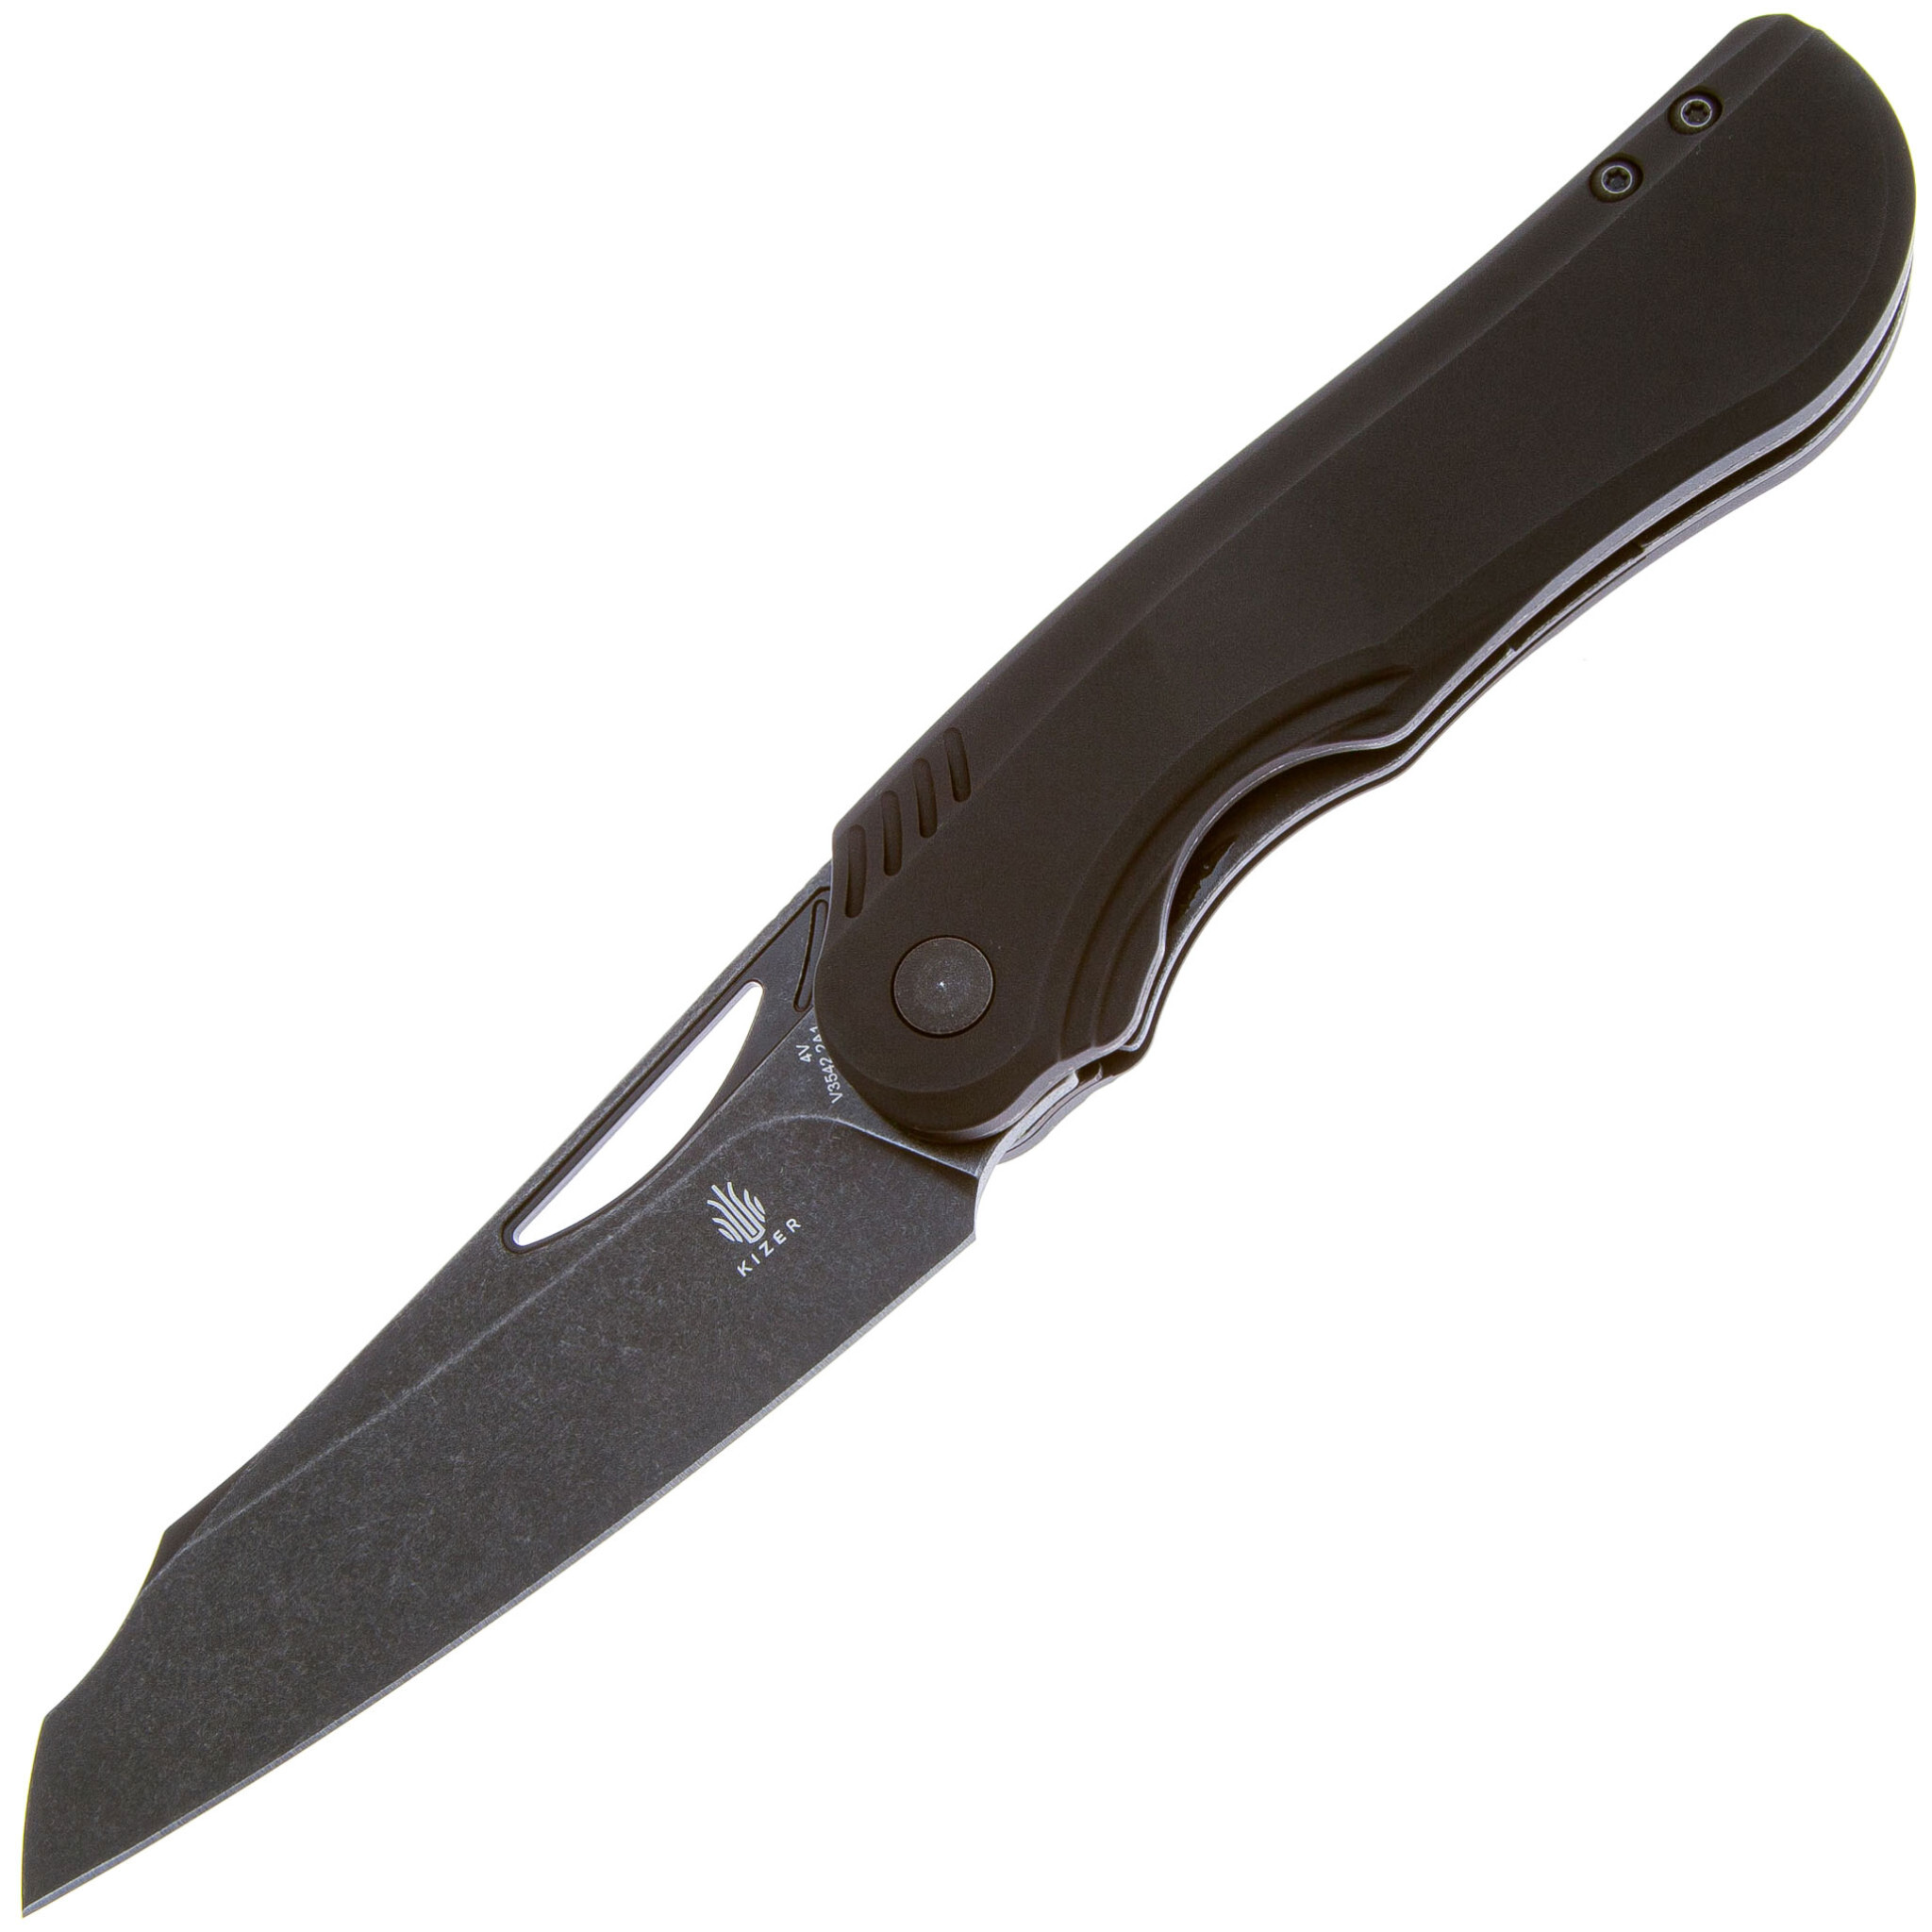 Складной нож Kizer Kobold 2.0, сталь 154CM, рукоять алюминий, черный нож opinel 8 vri outdoor knife двух ная пластик рукоять красная свисток вставка для темляка